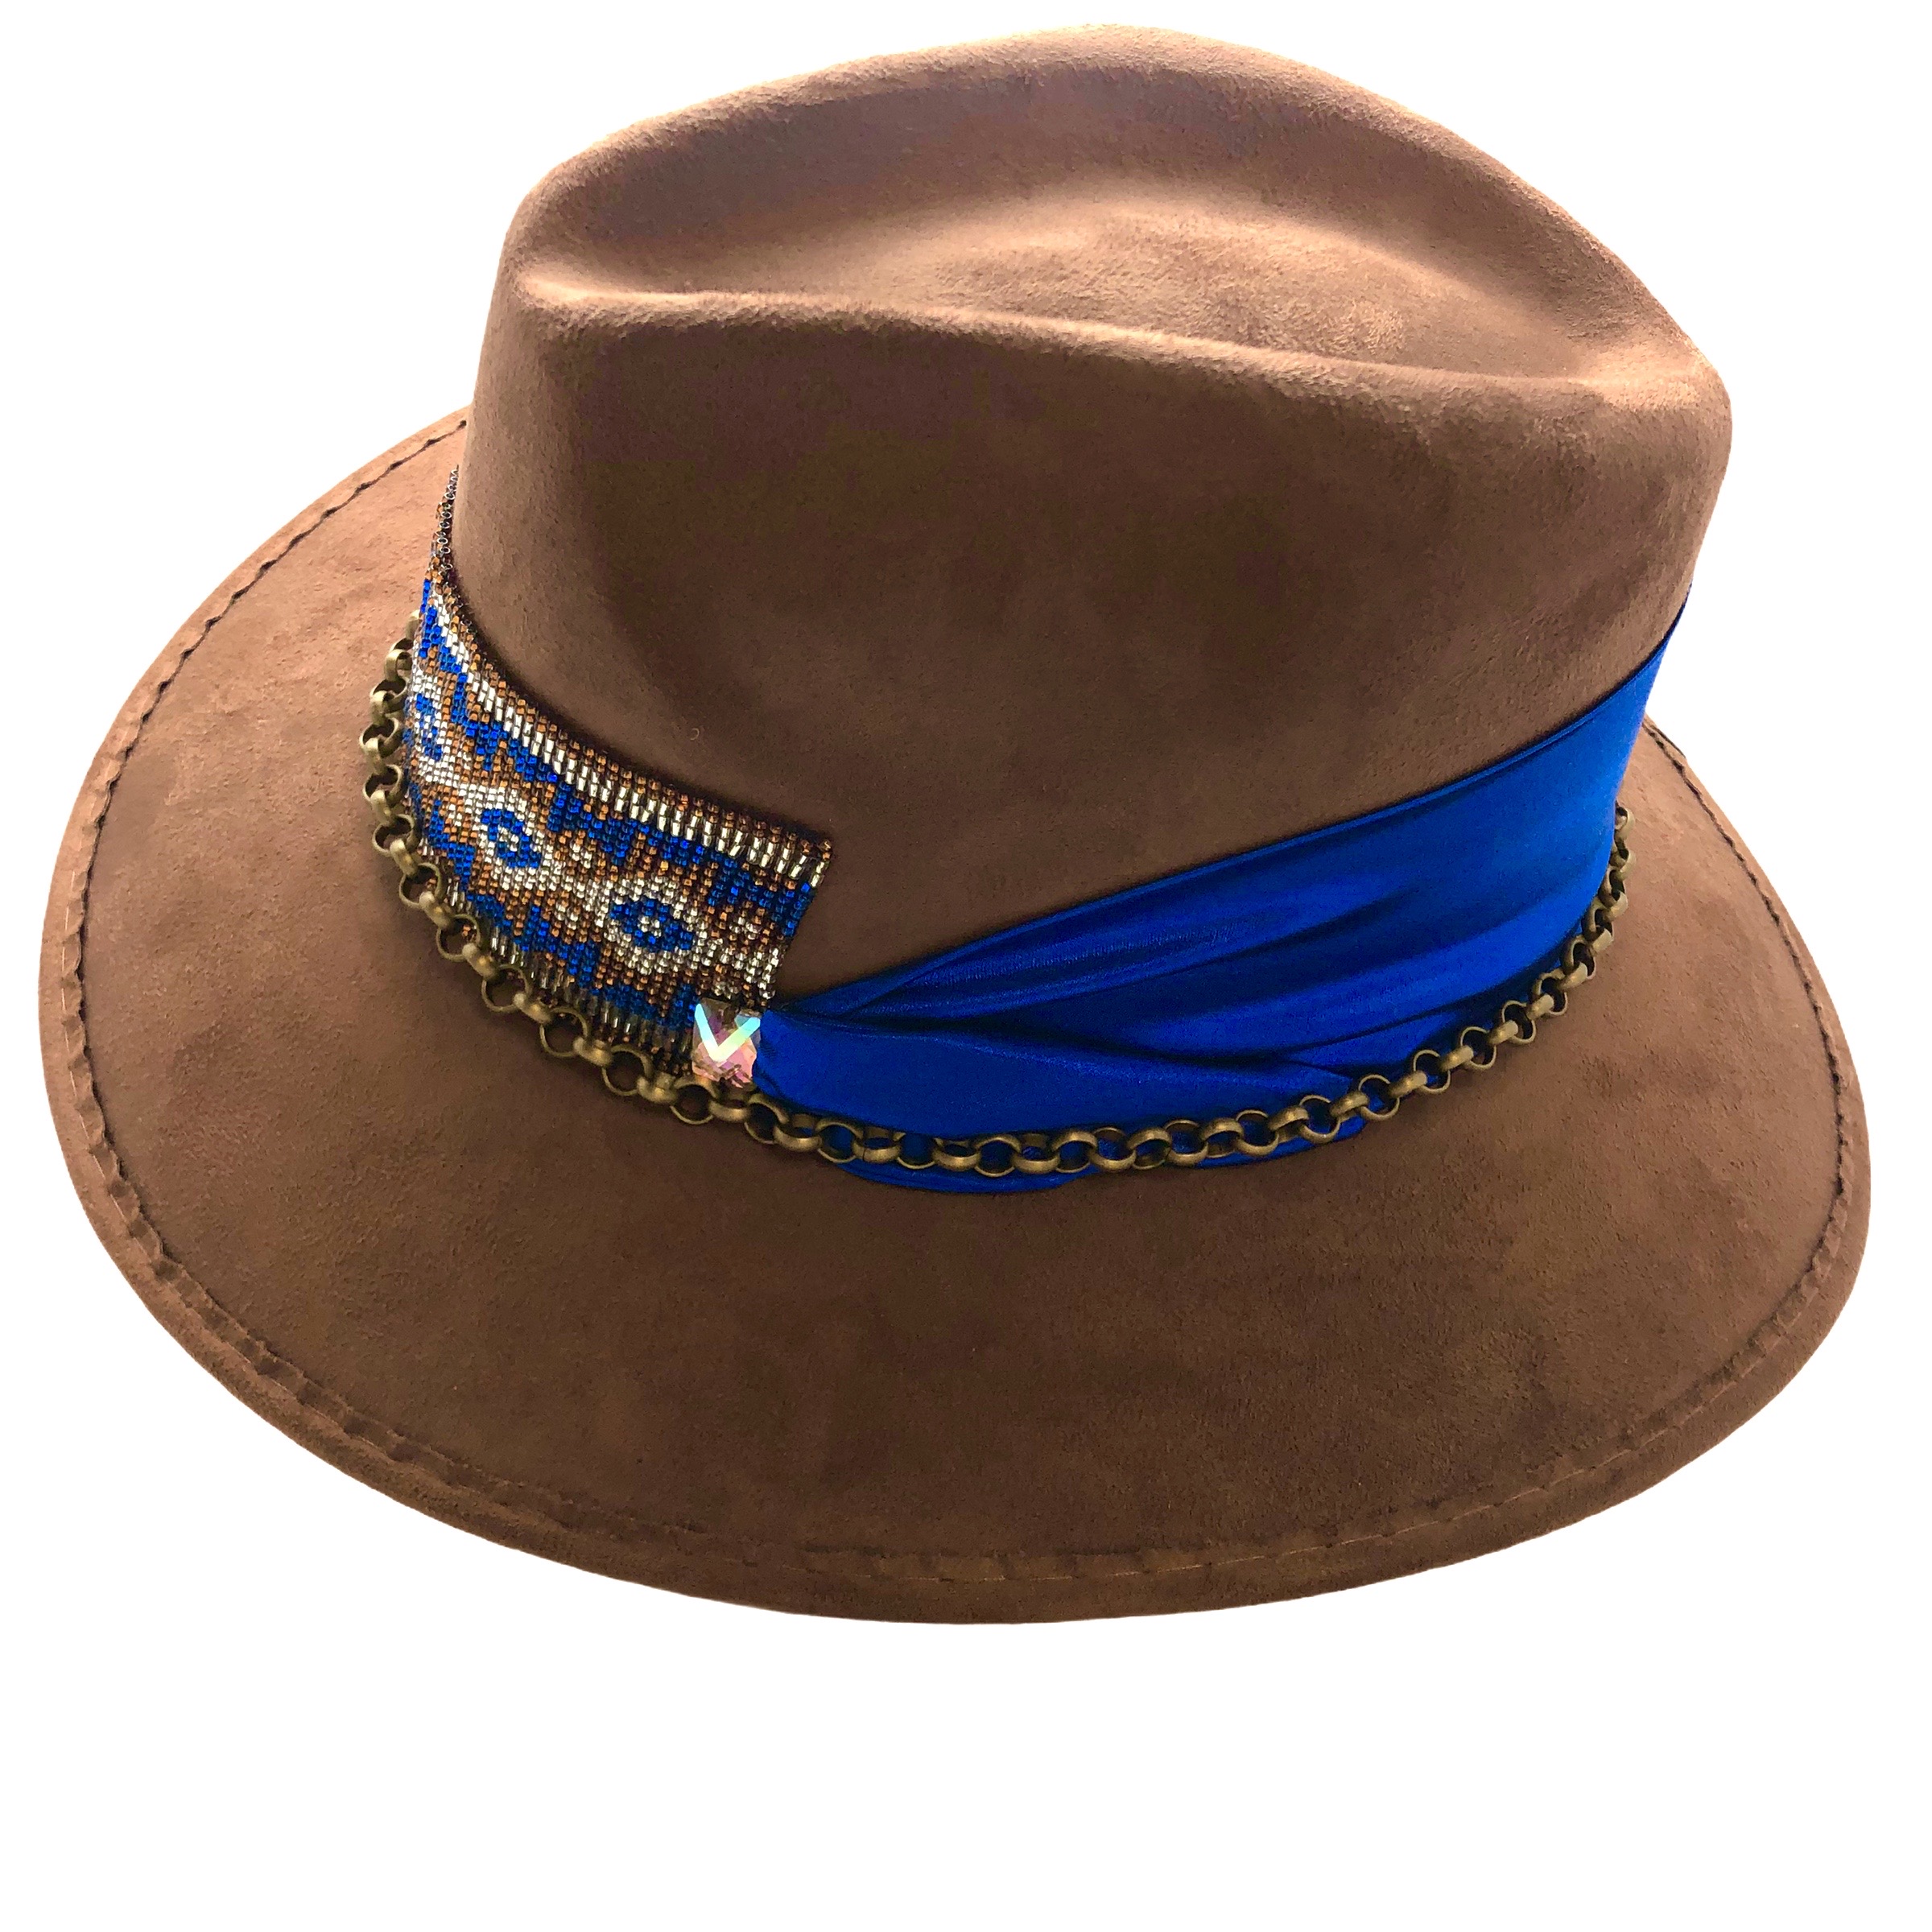 Sombrero tejido café claro con ala corta y cinta azul decorativa